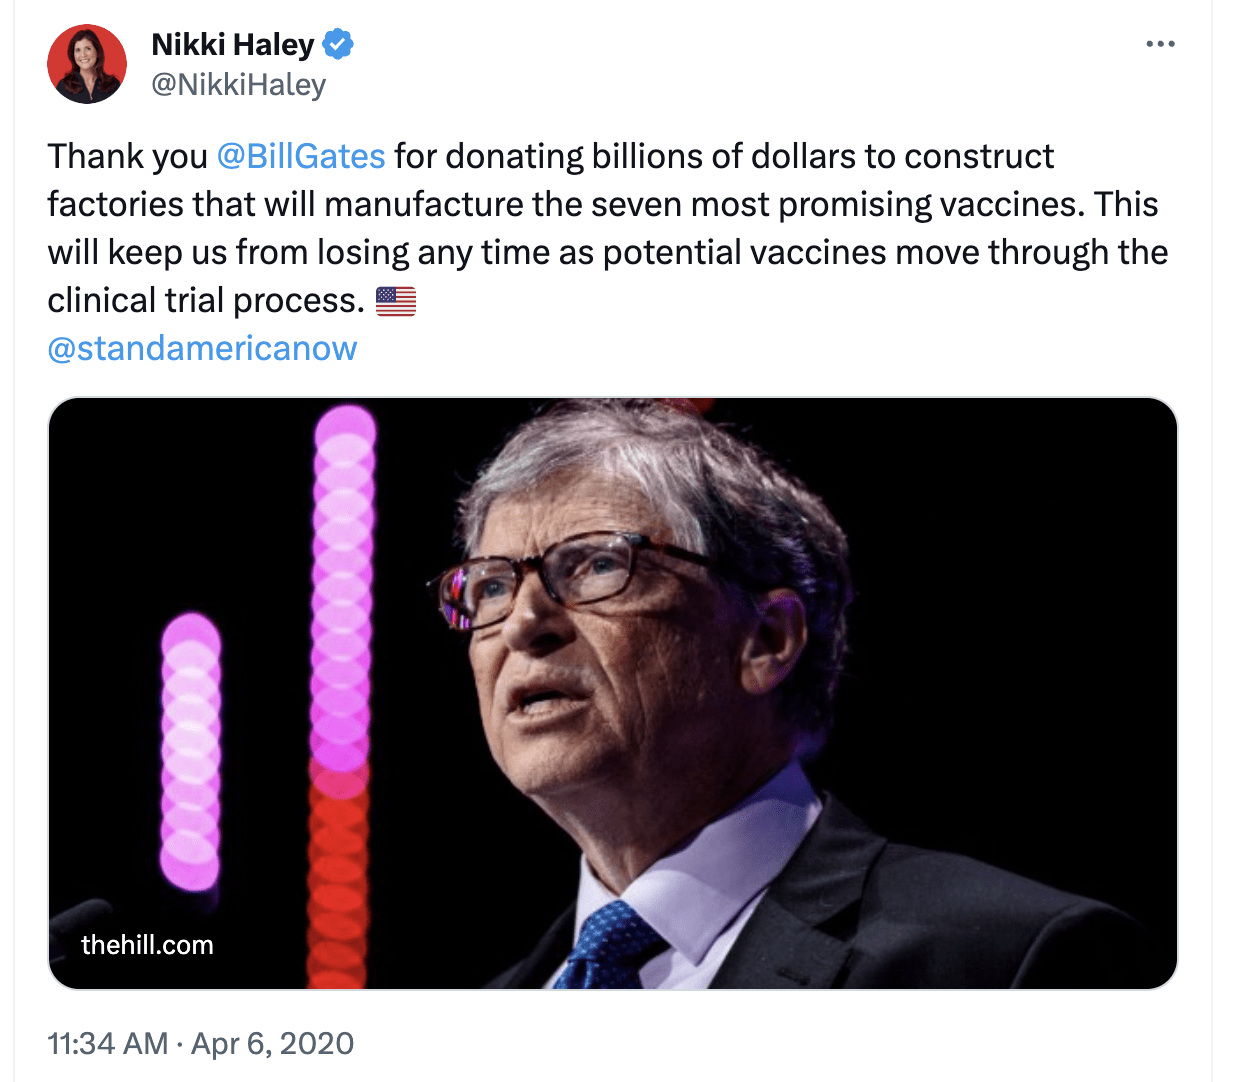 Nikki Haley's tweet praising Bill Gates